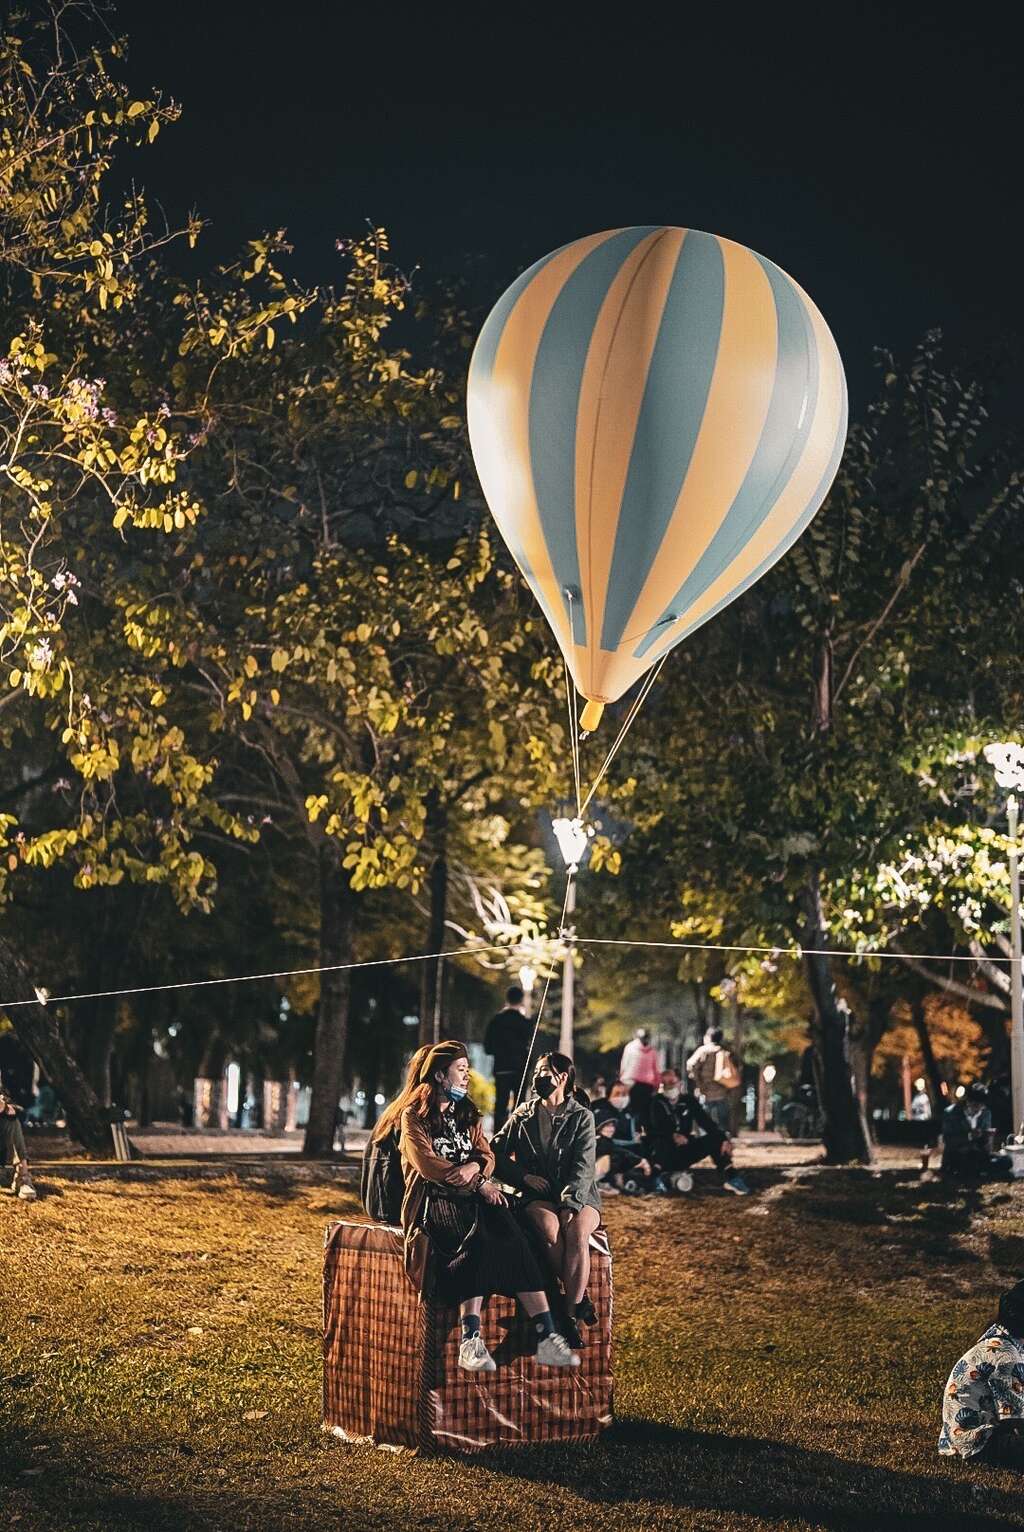 民眾與熱氣球合影